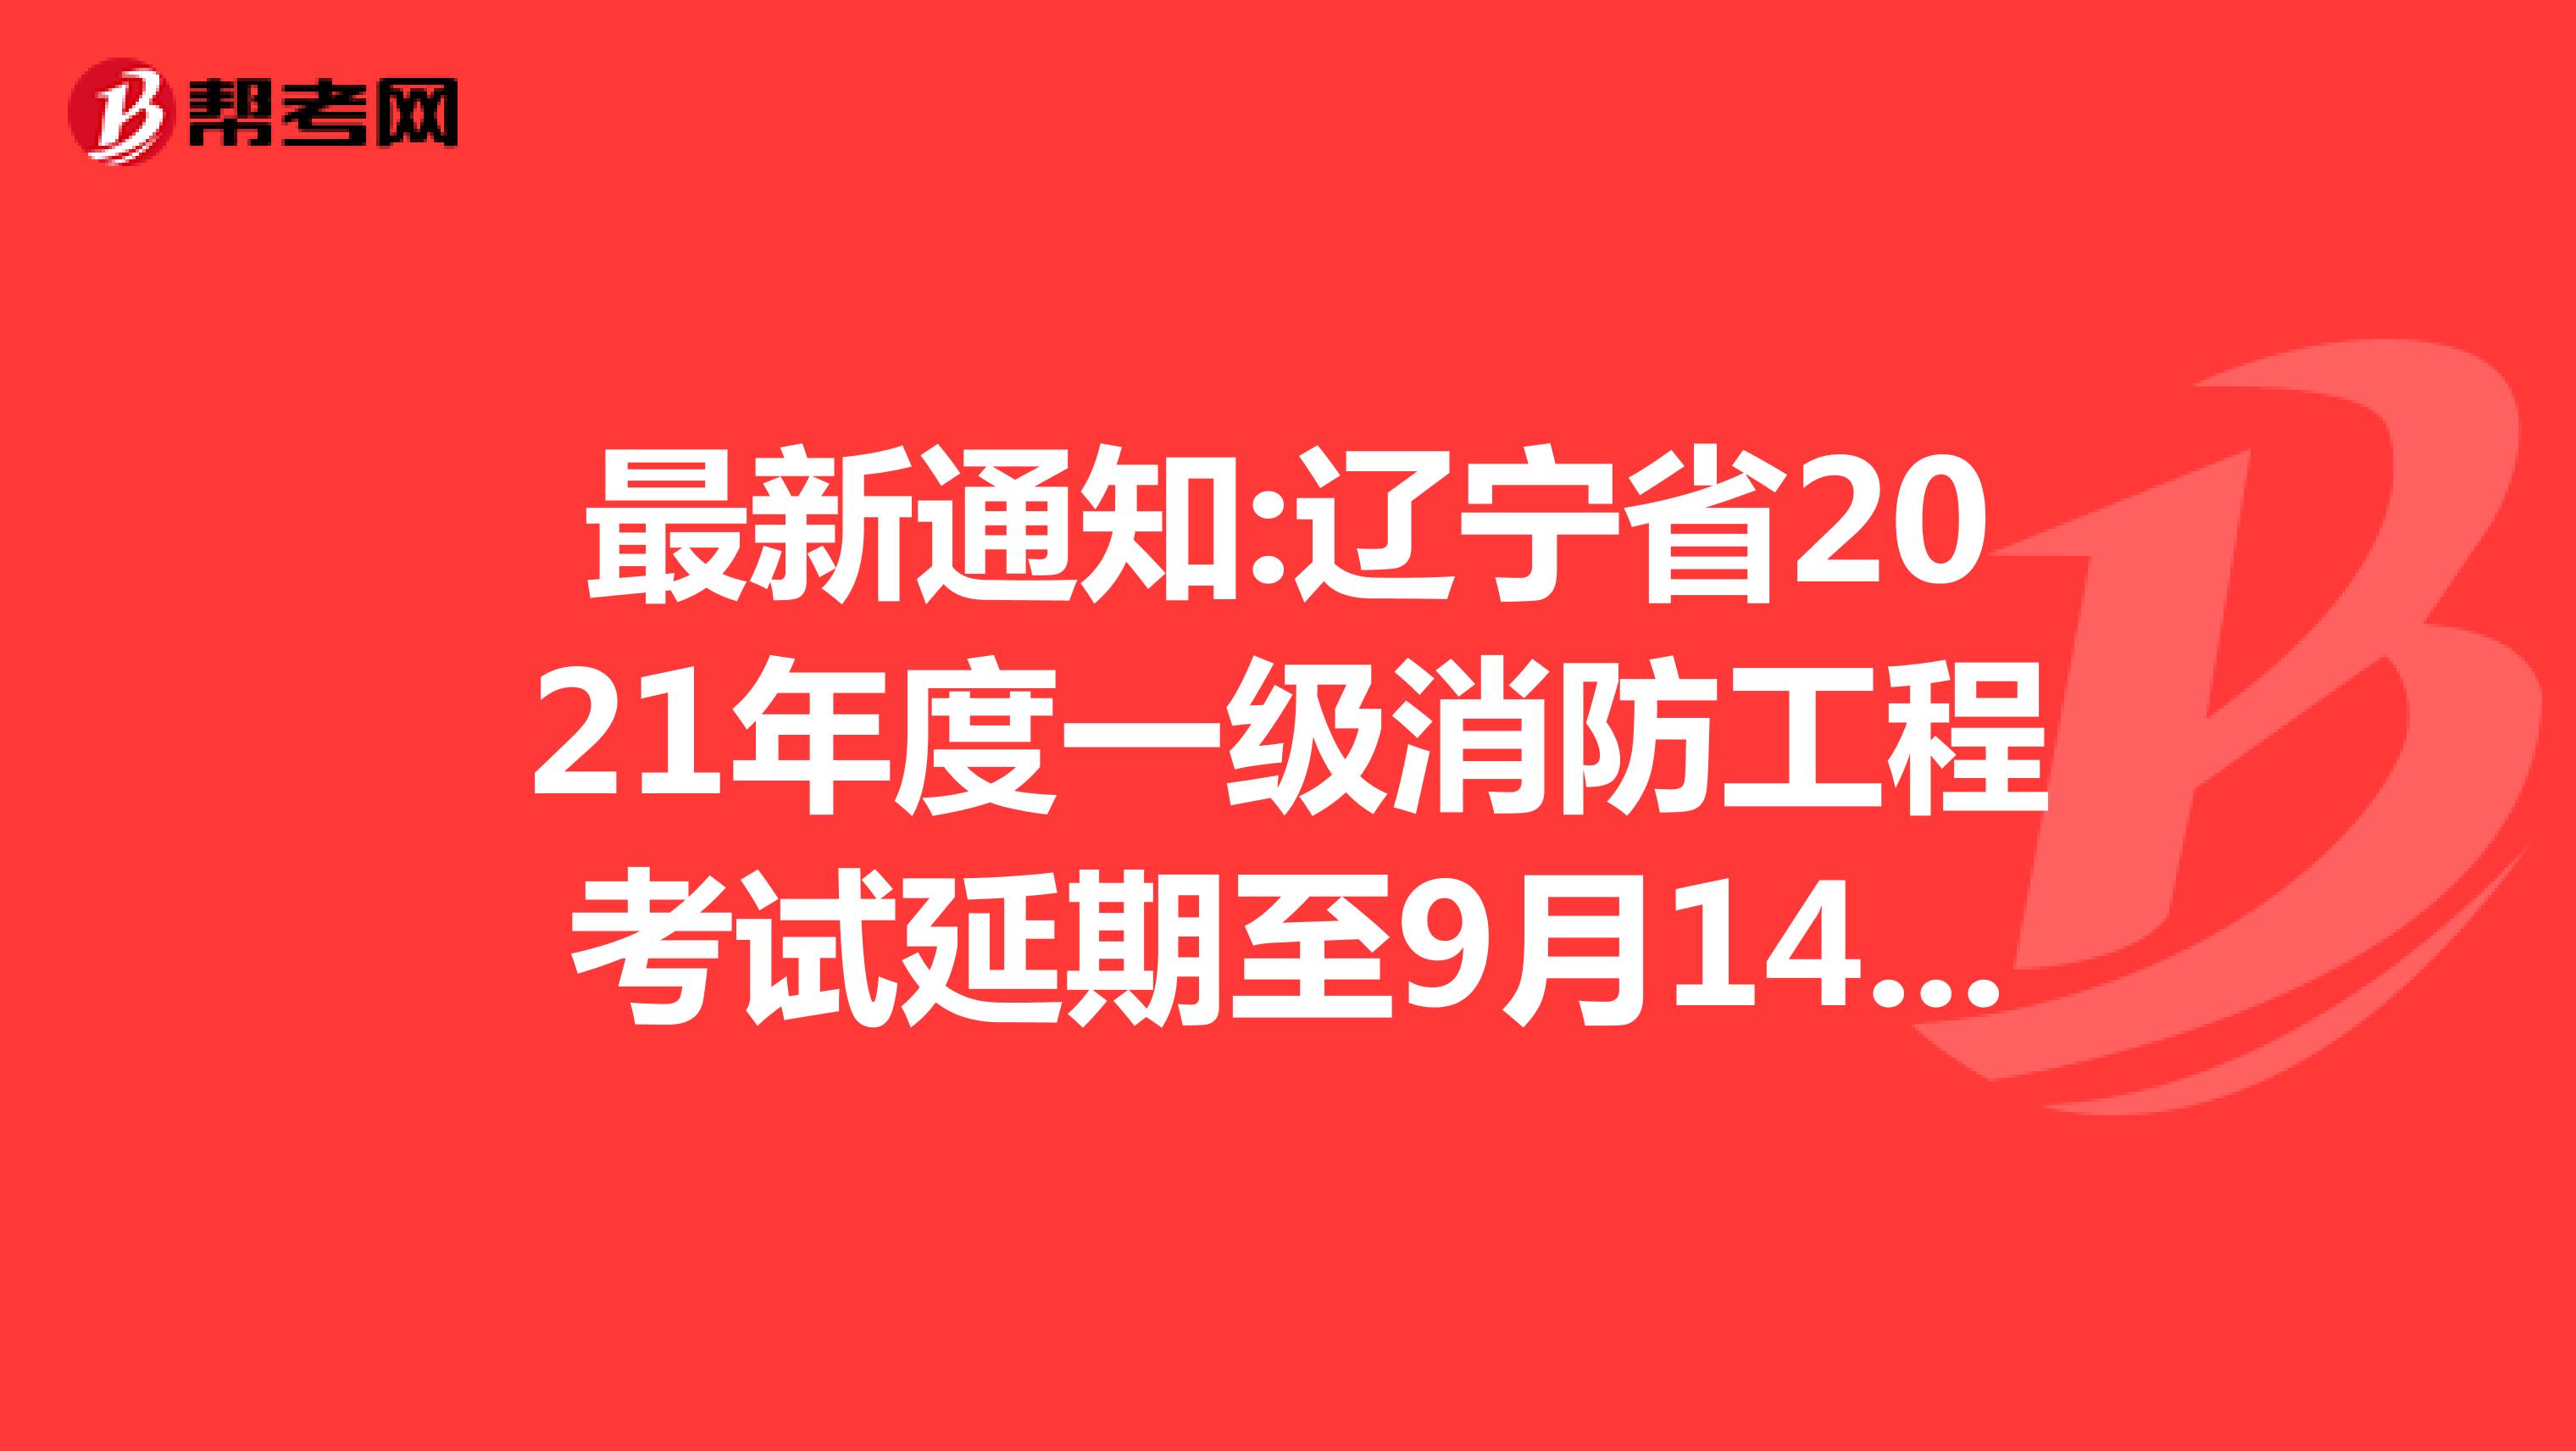 最新通知:辽宁省2021年度一级消防工程考试延期至9月14日！